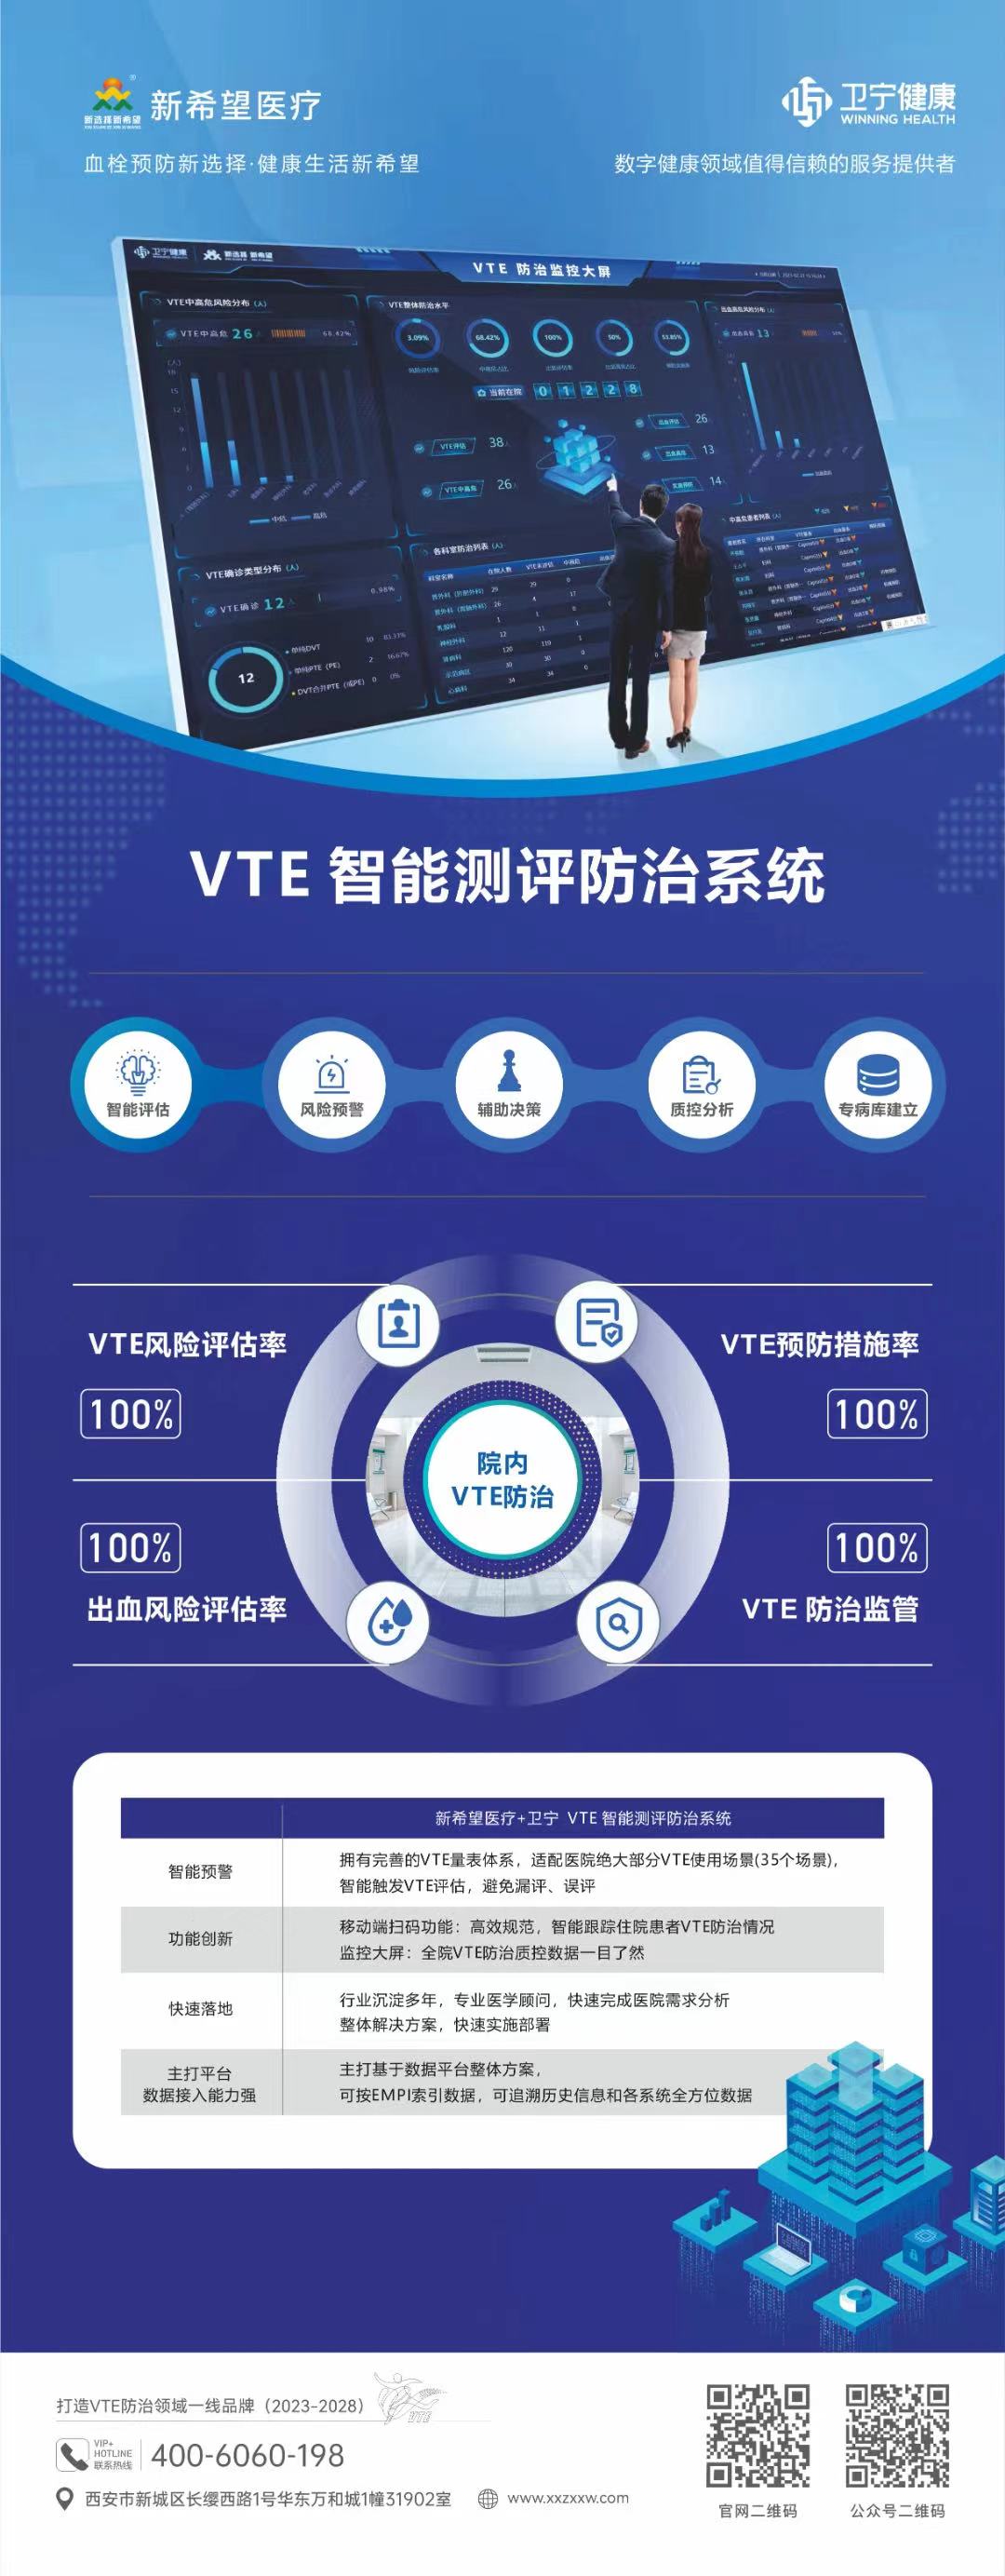 关于举办2023中国VTE防治大会暨“血栓防治宣传活动月”的通知